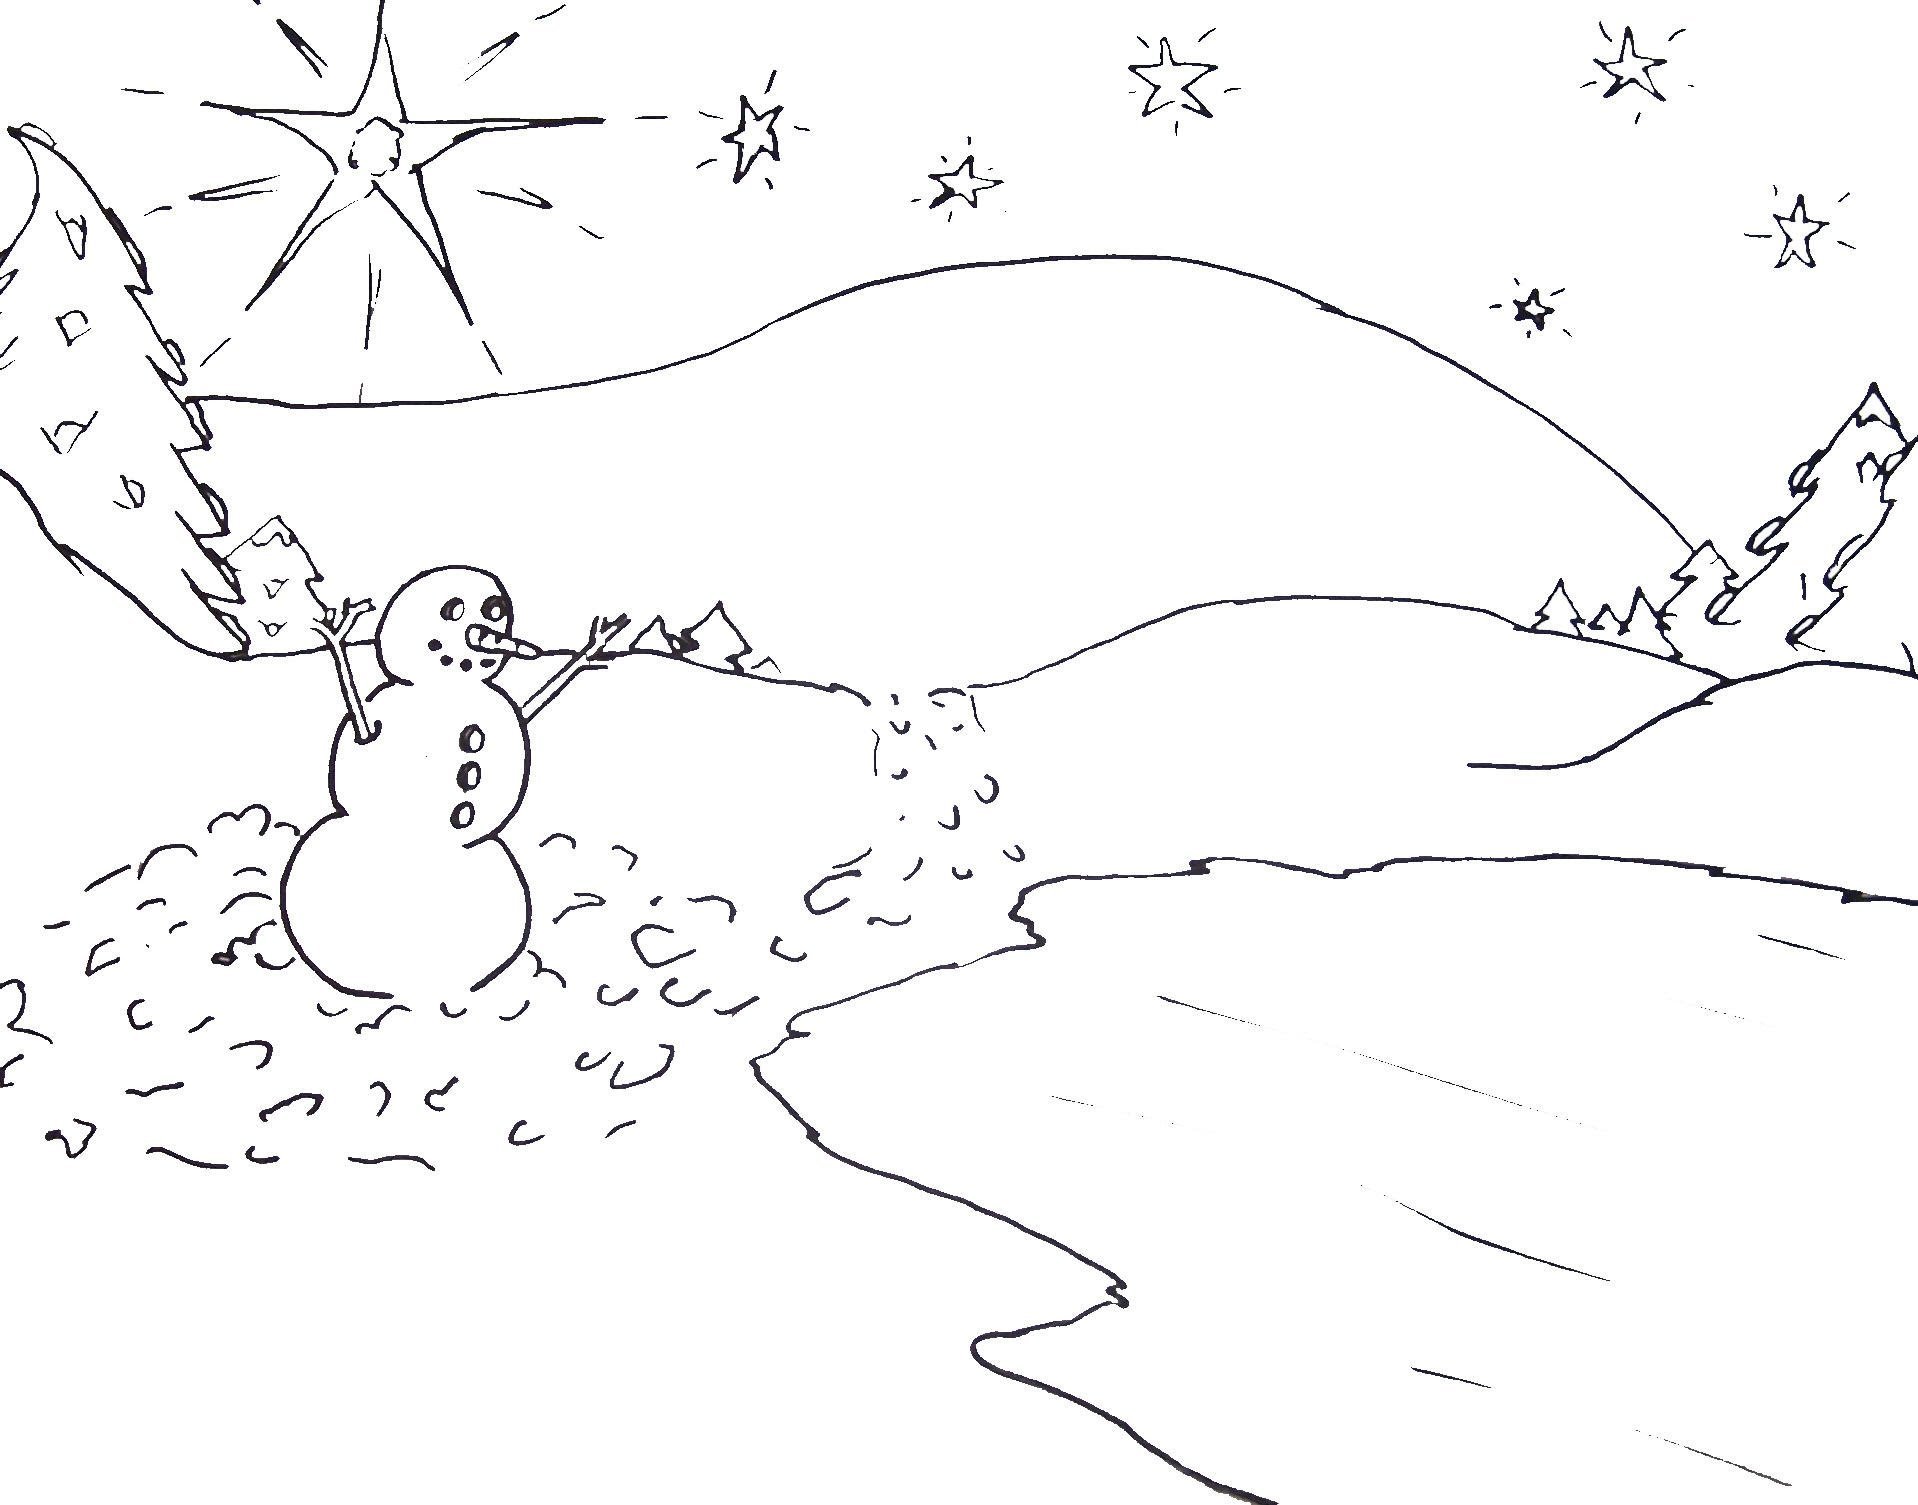 Раскрасим снег. Зимняя раскраска. Зимний пейзаж раскраска. Сугробы раскраска для детей. Раскраска сугробы снега для детей.